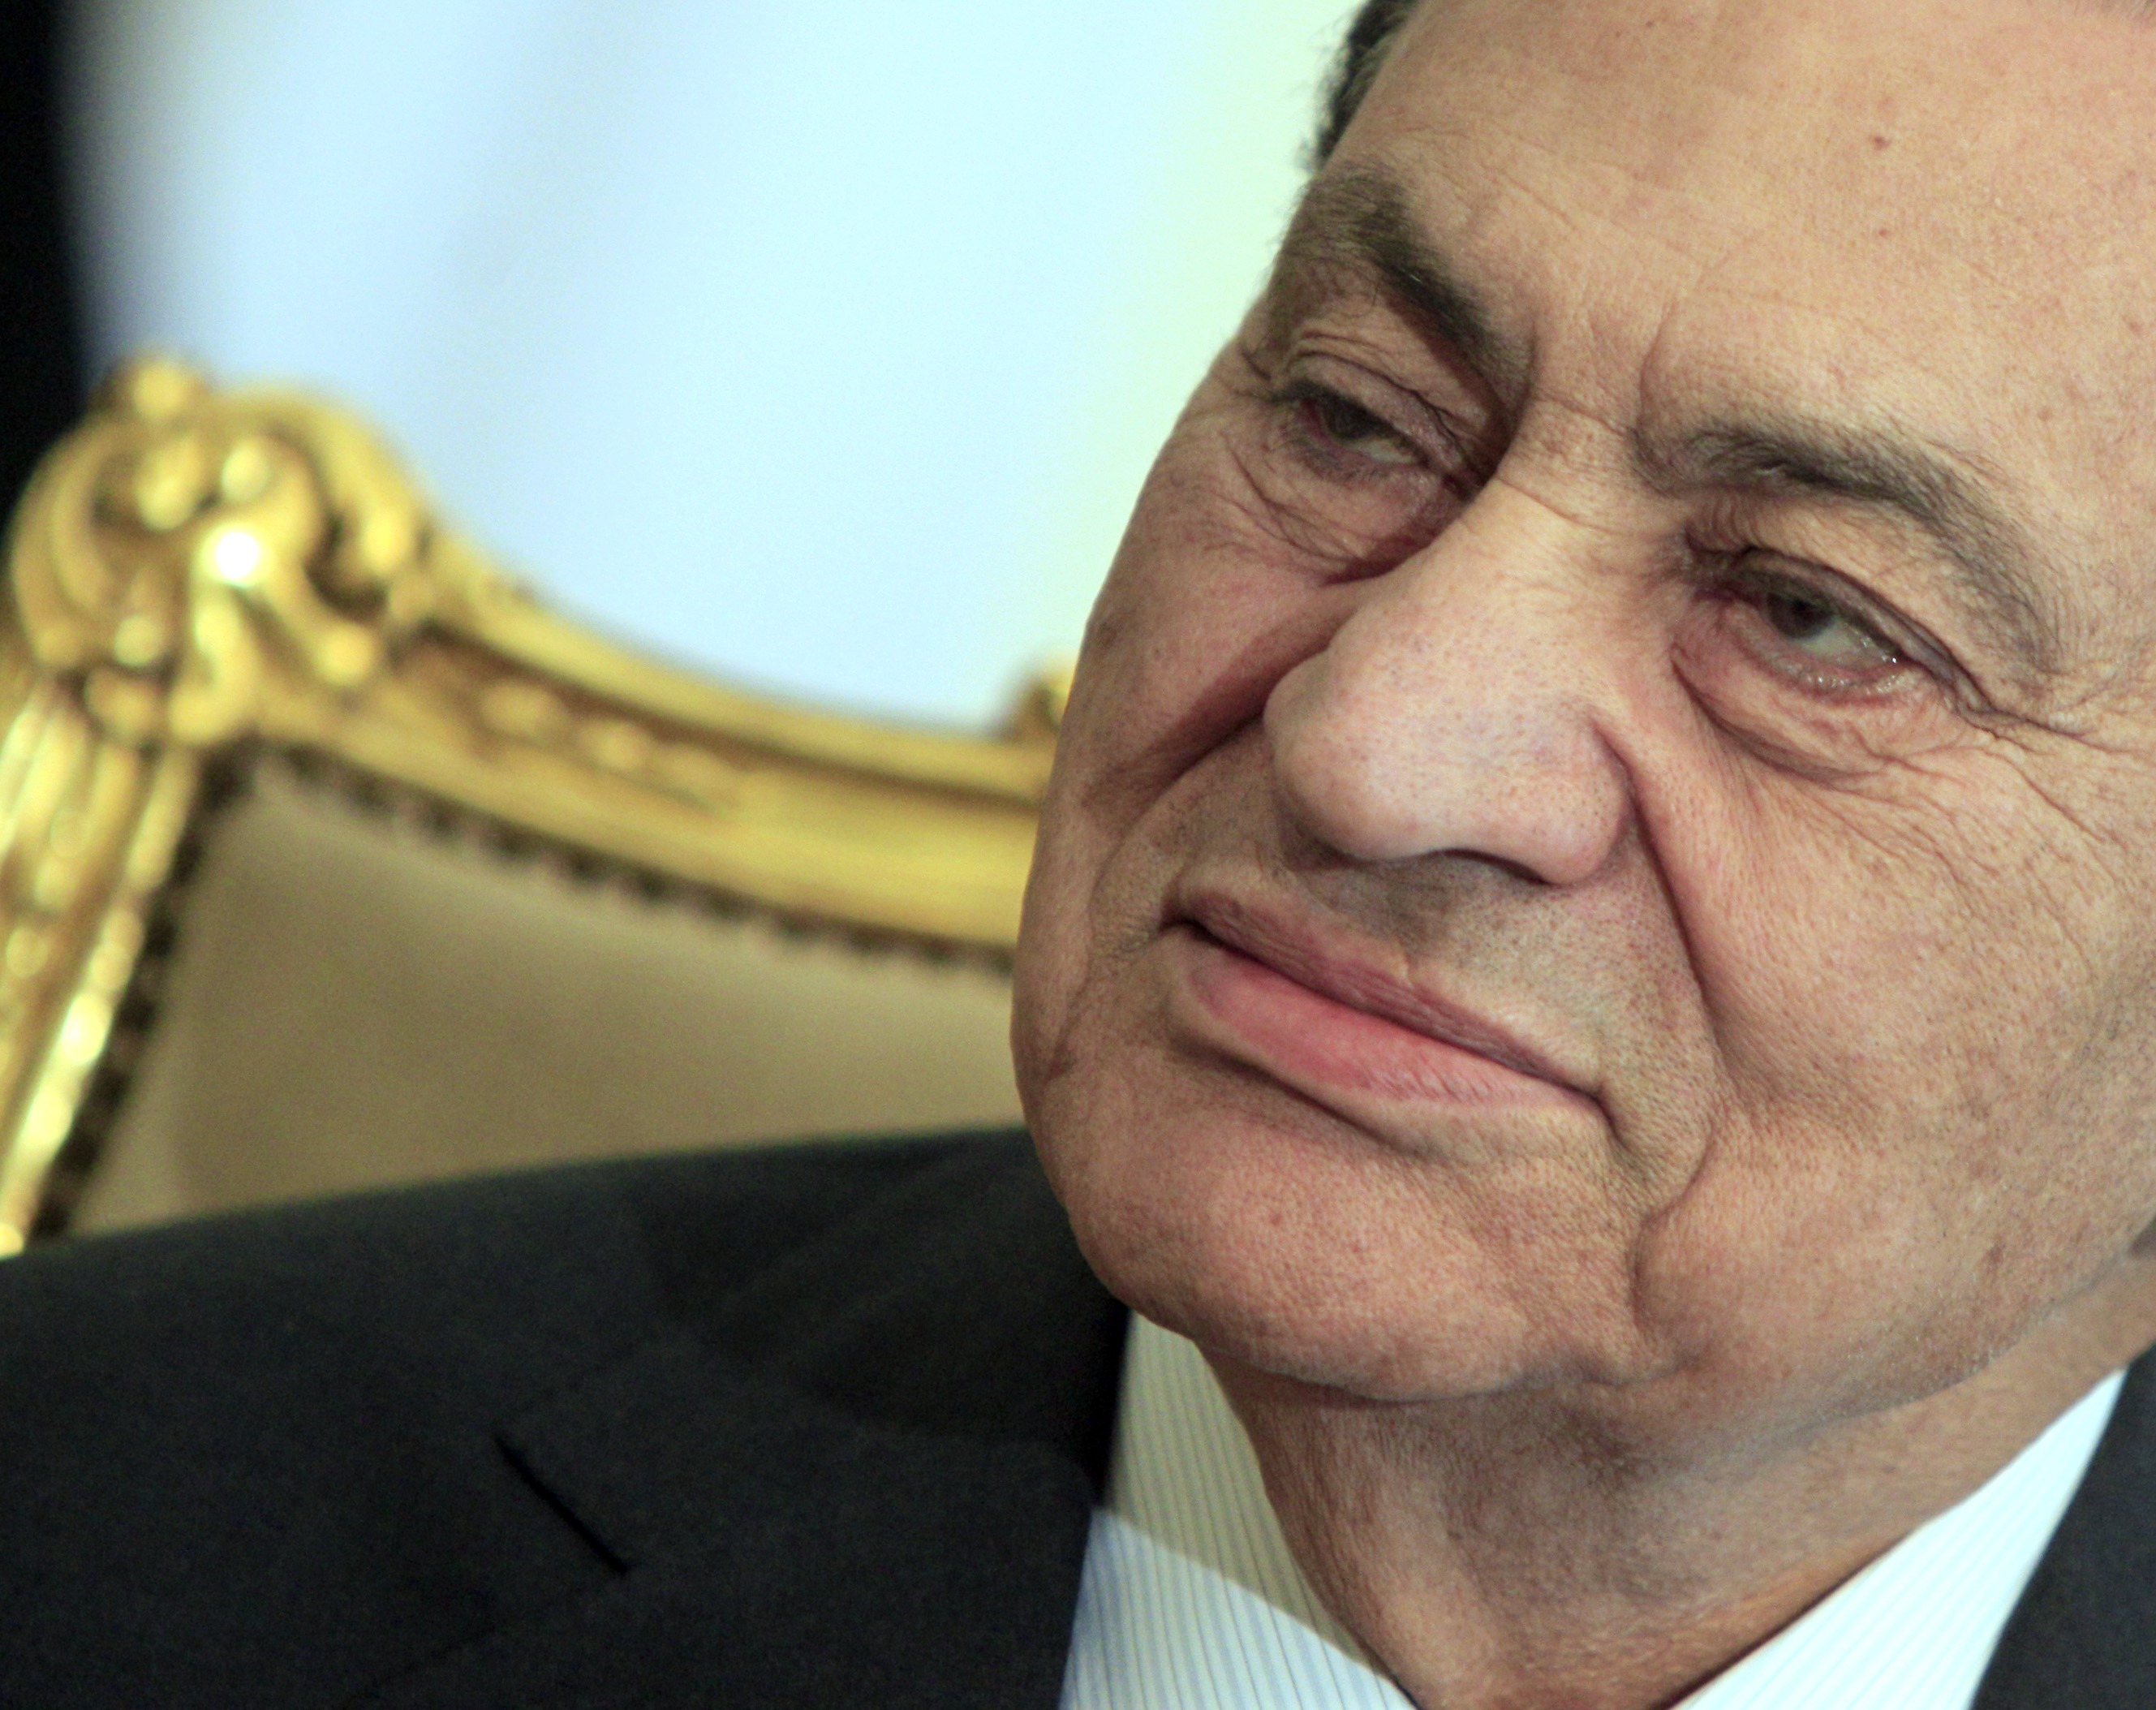 Politik, President, Hosni Mubarak, Mubarak, Kairo, Demonstration, Egypten